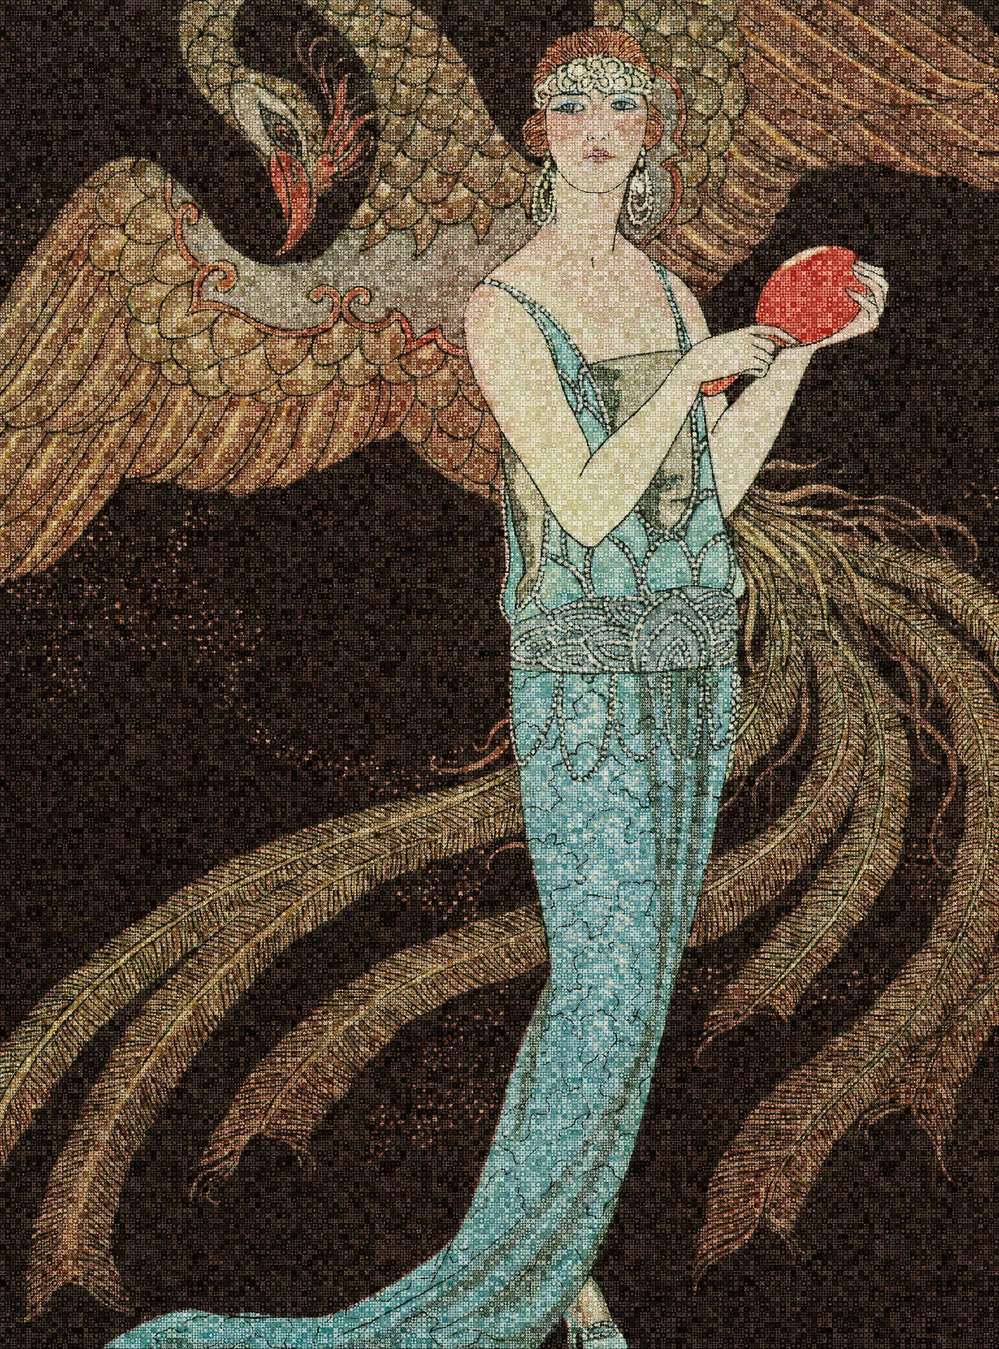             Scala 1 - Papel Pintado Art Deco Mosaico Fénix y Mujer
        